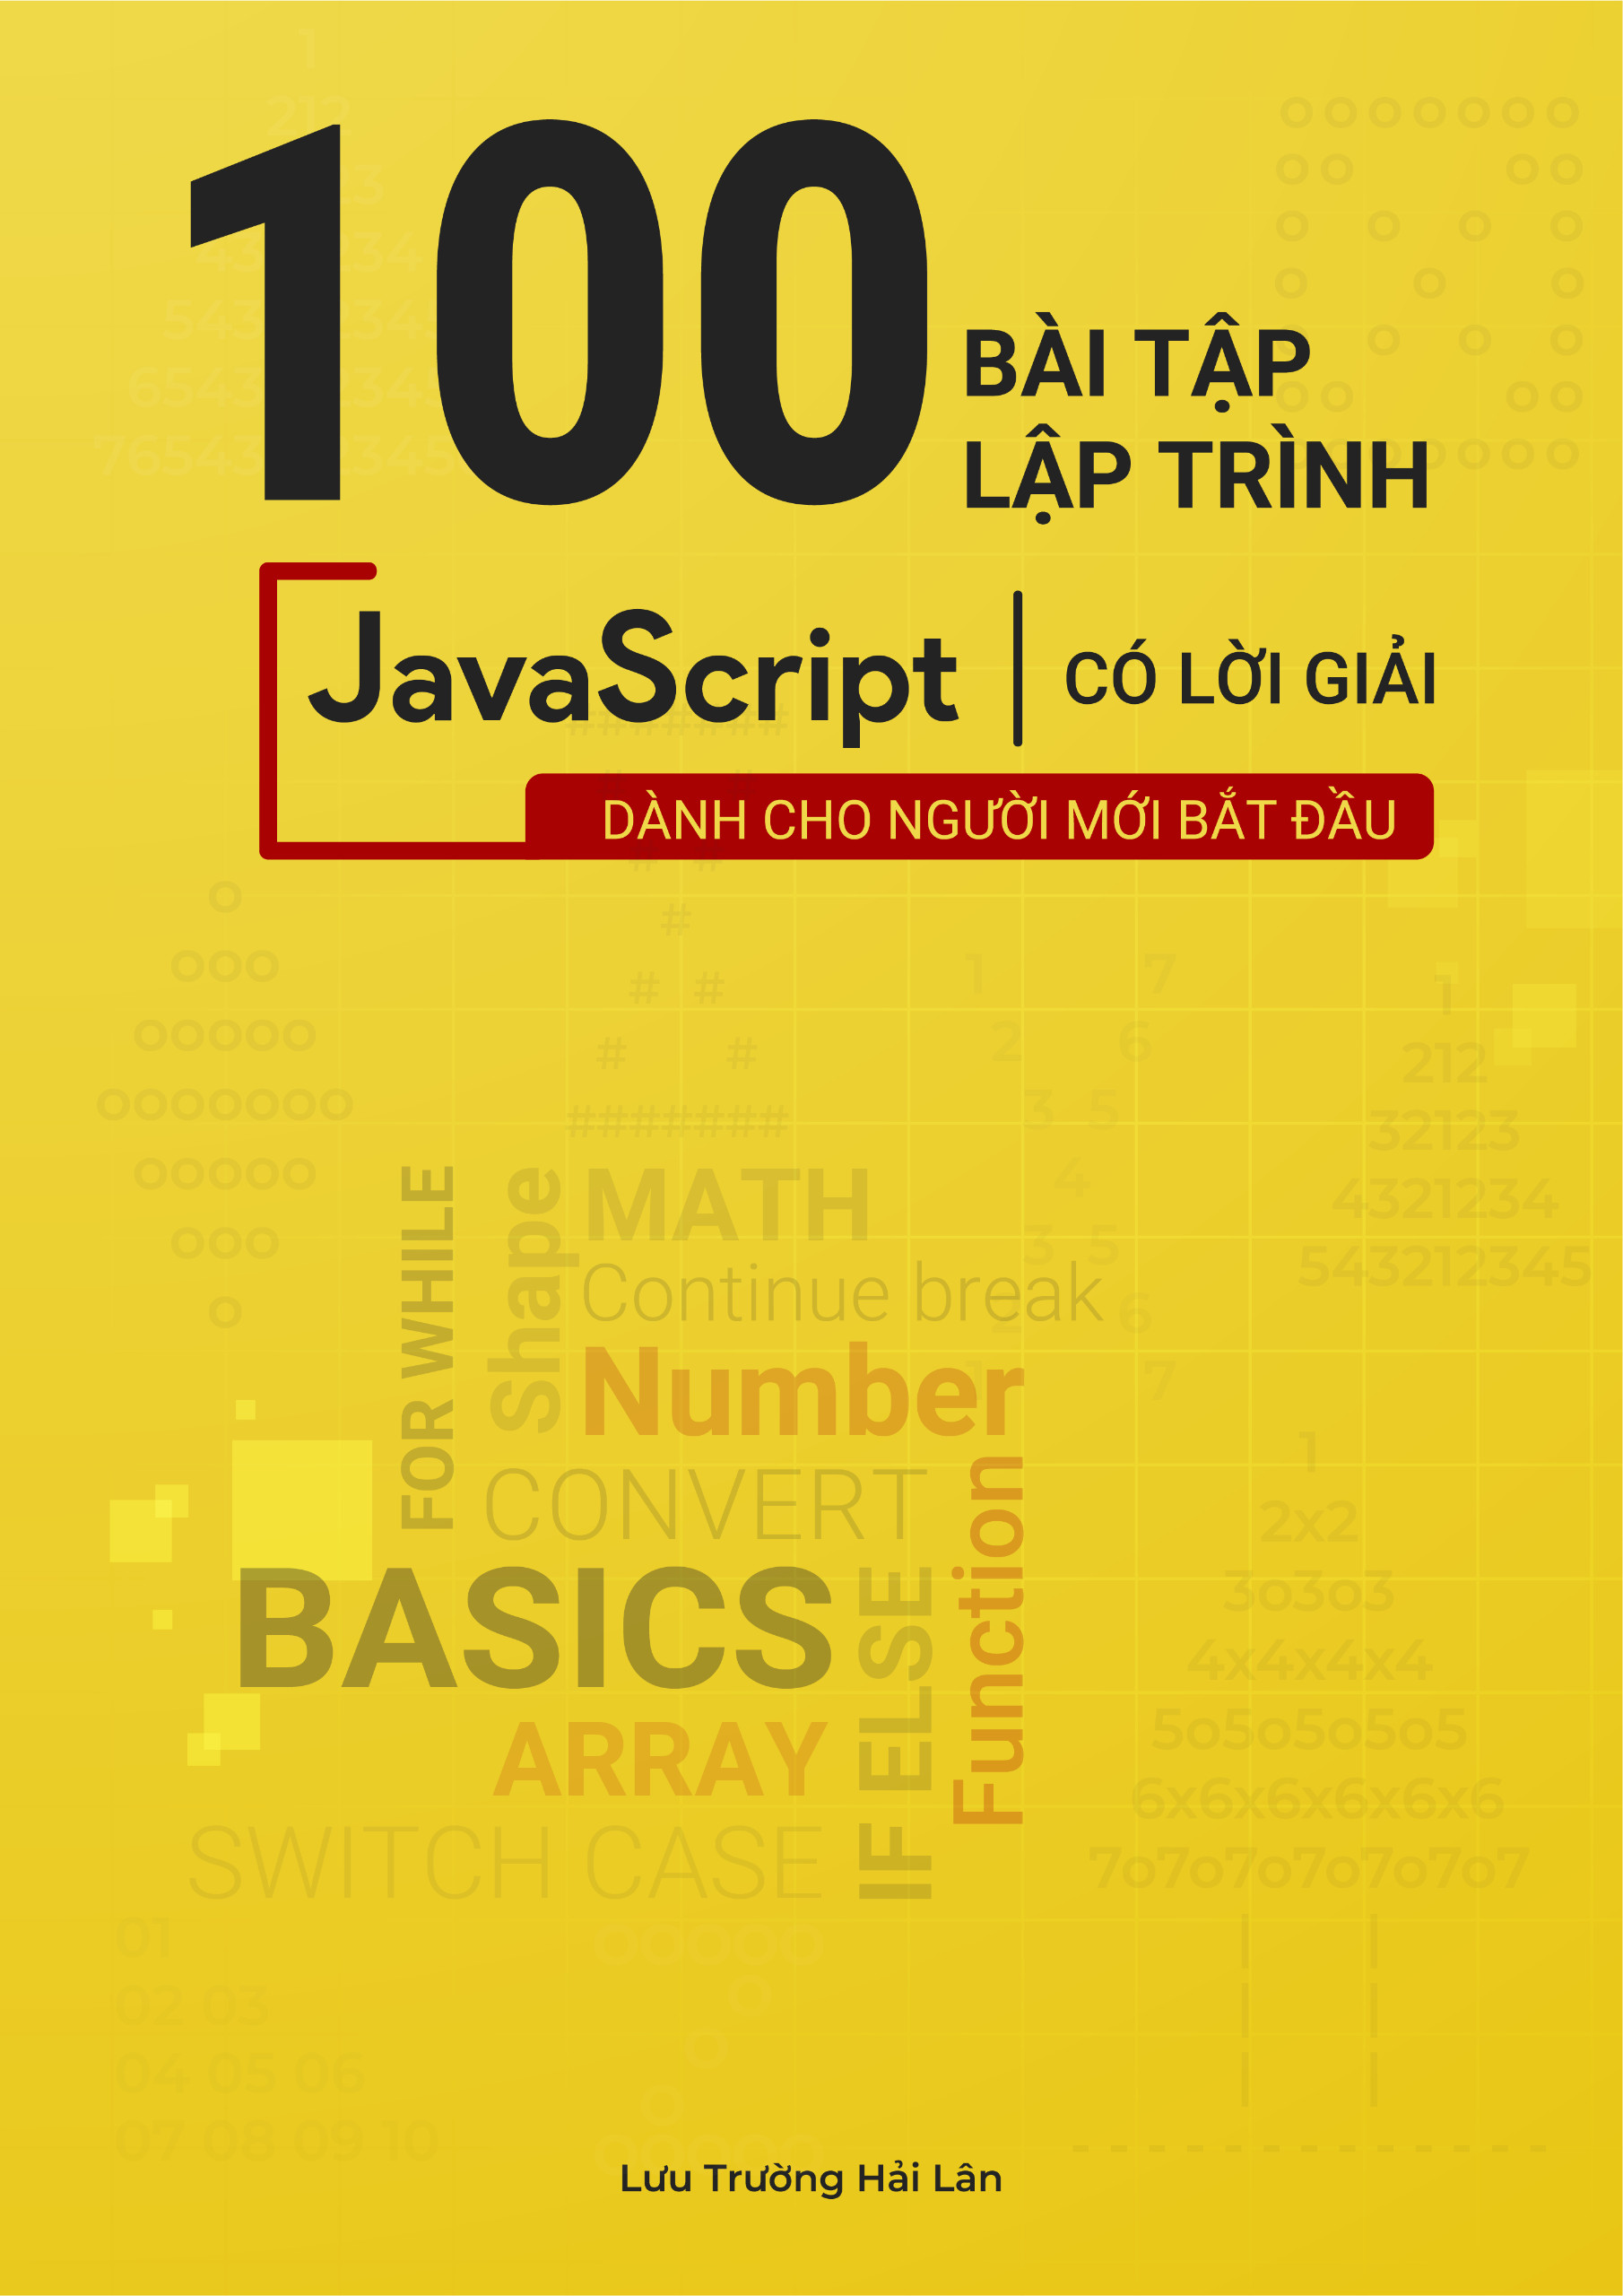 100 bài tập Javascript có lời giải